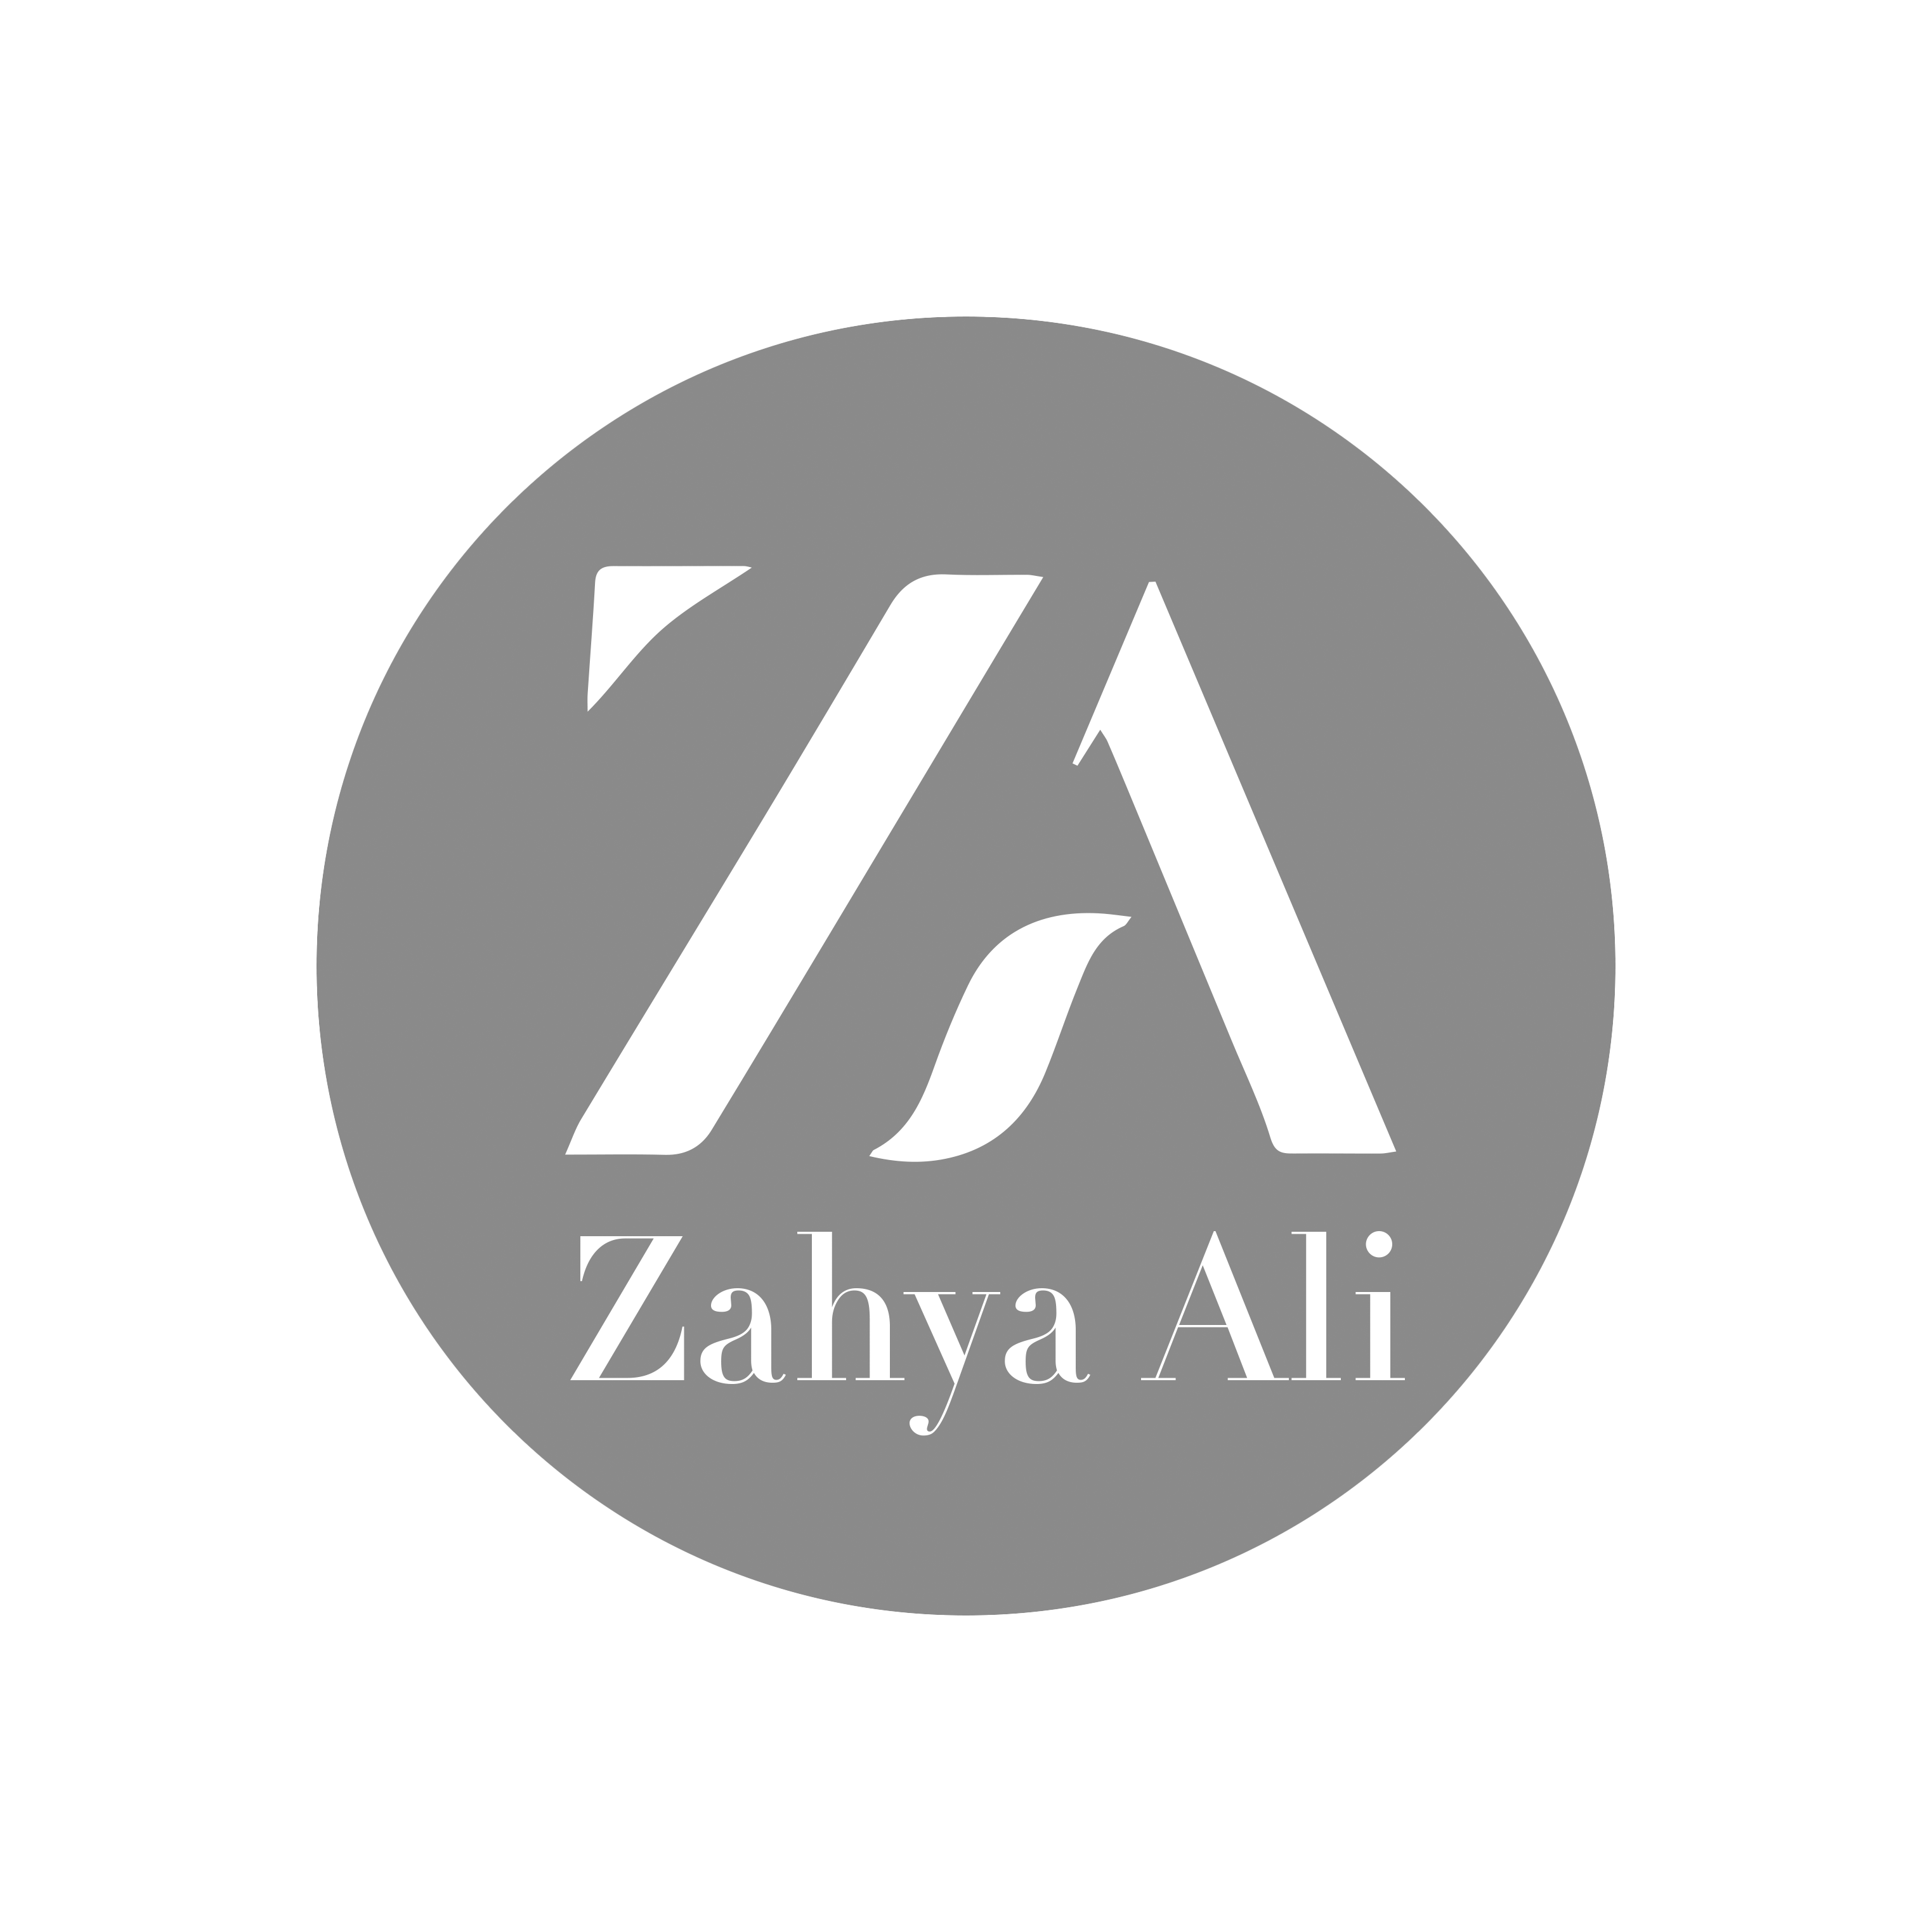 zahya logo black white